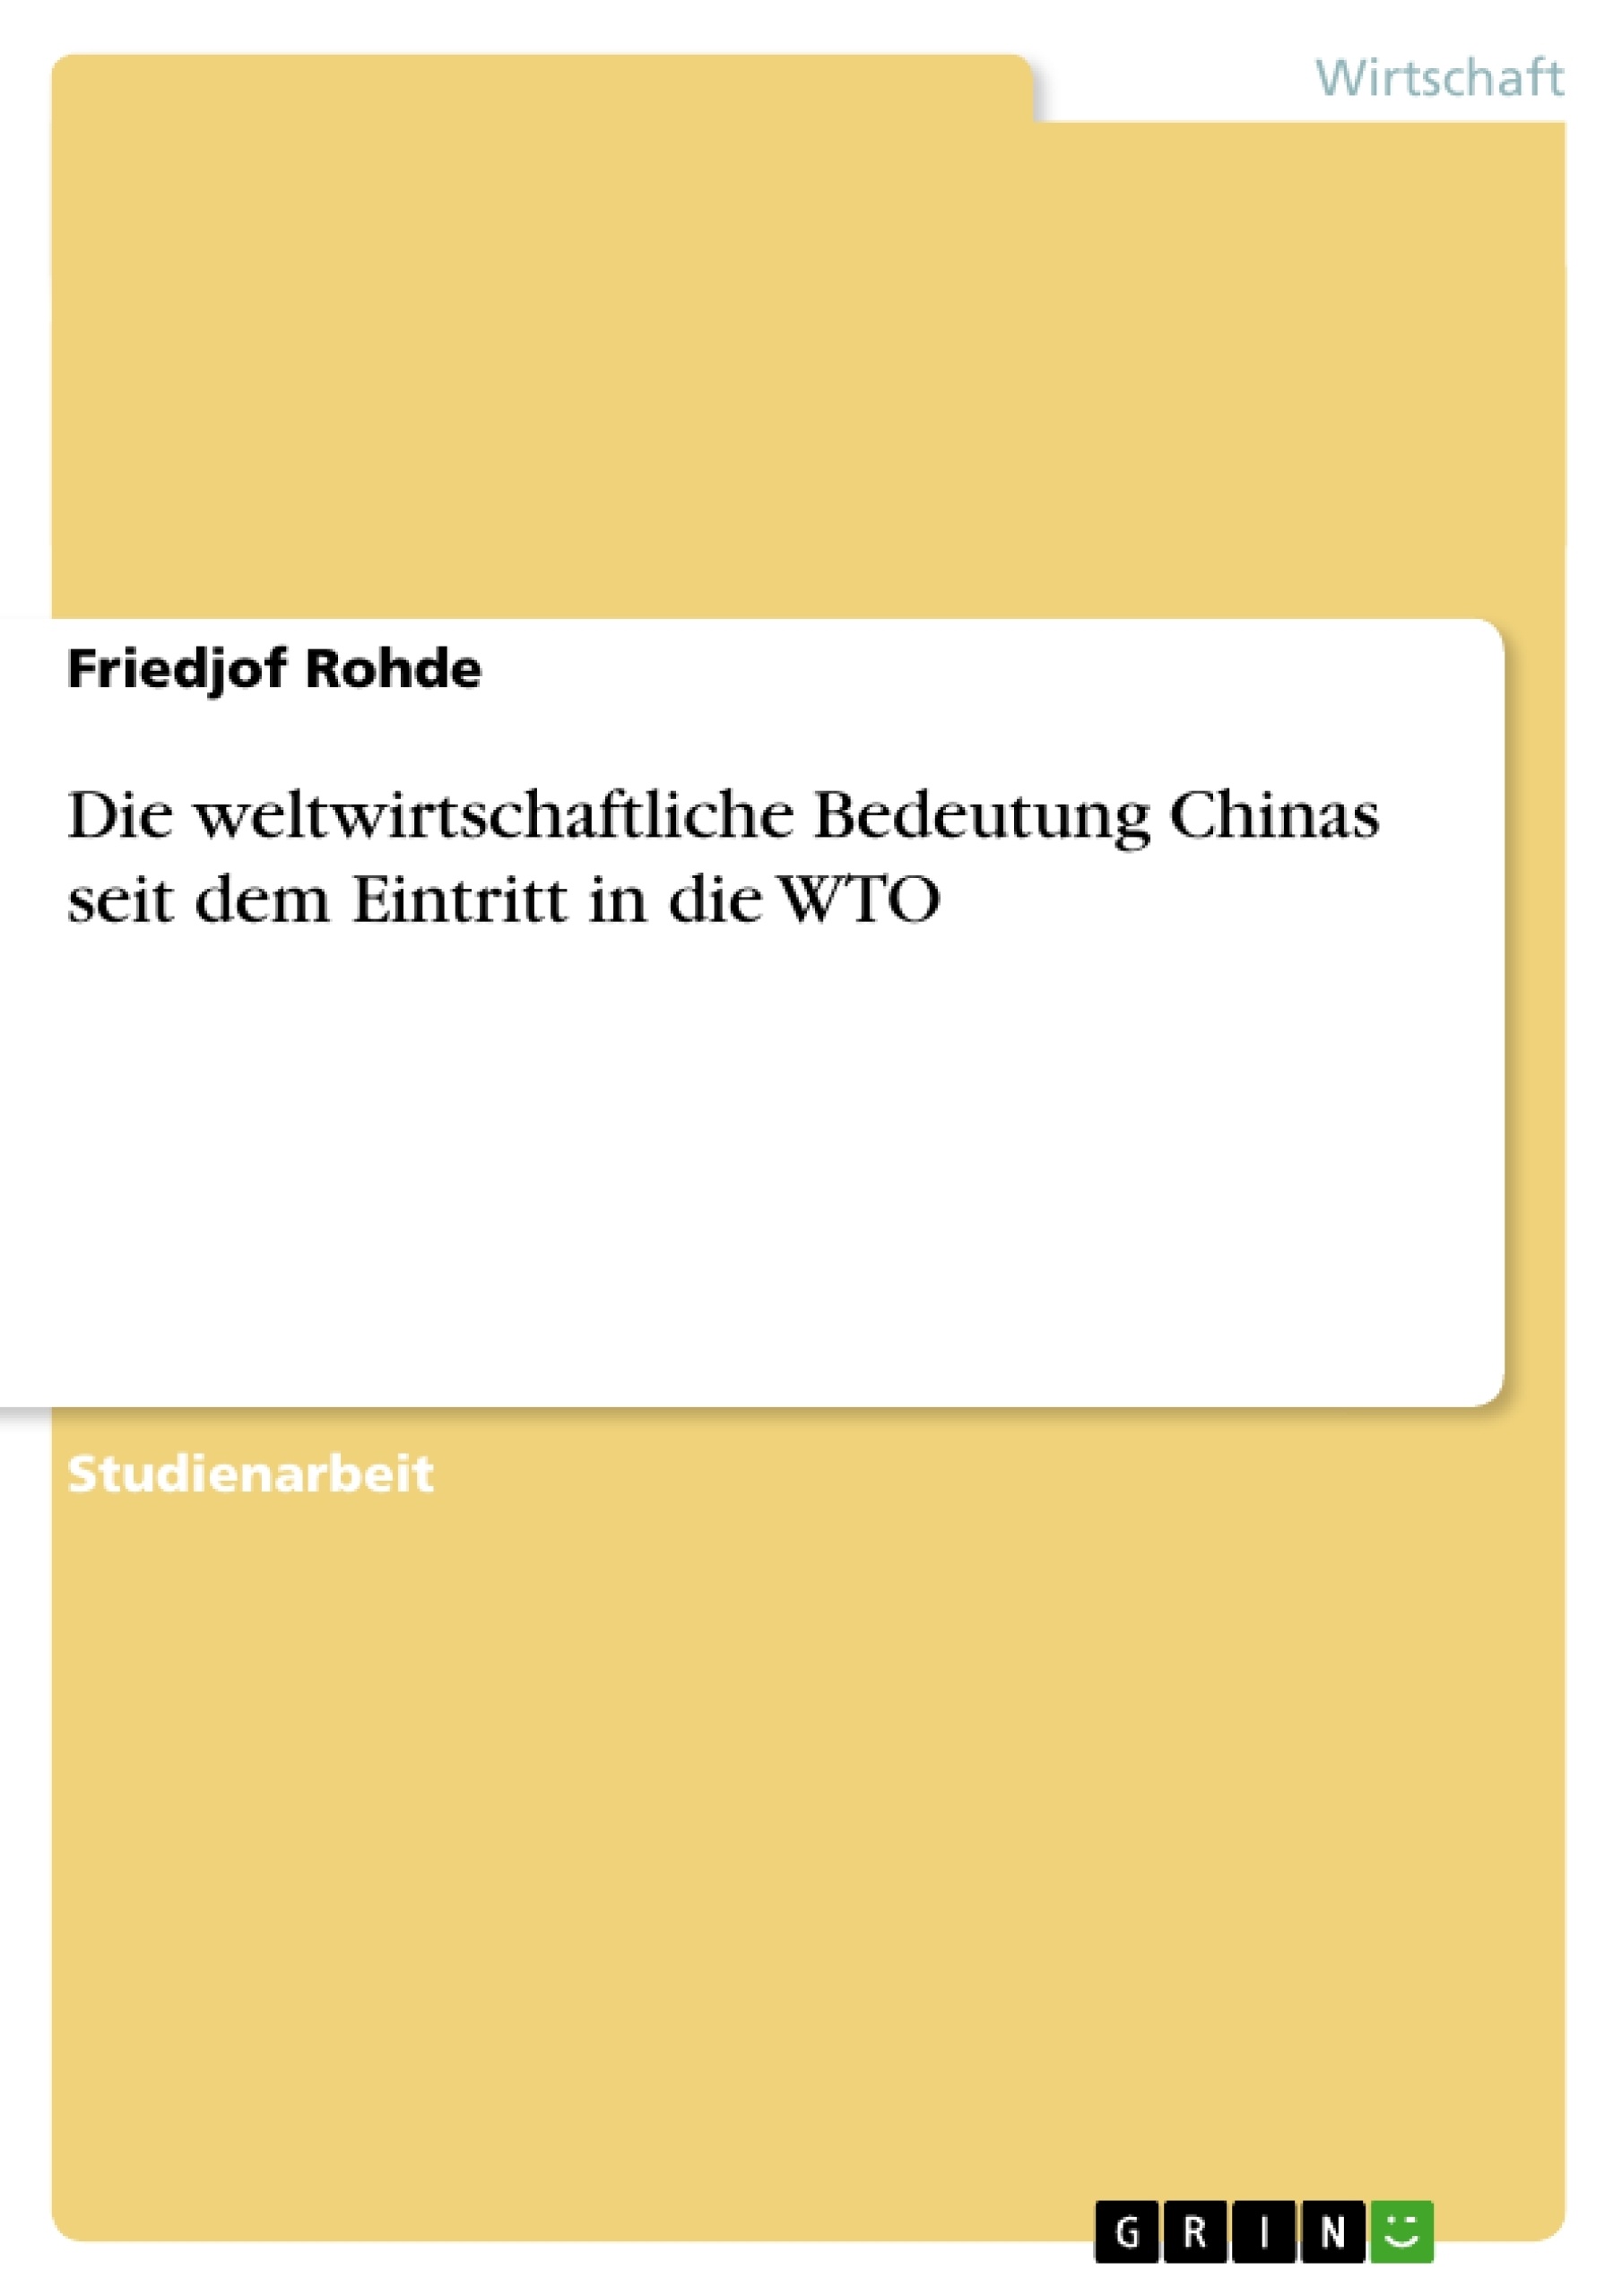 Title: Die weltwirtschaftliche Bedeutung Chinas seit dem Eintritt in die WTO